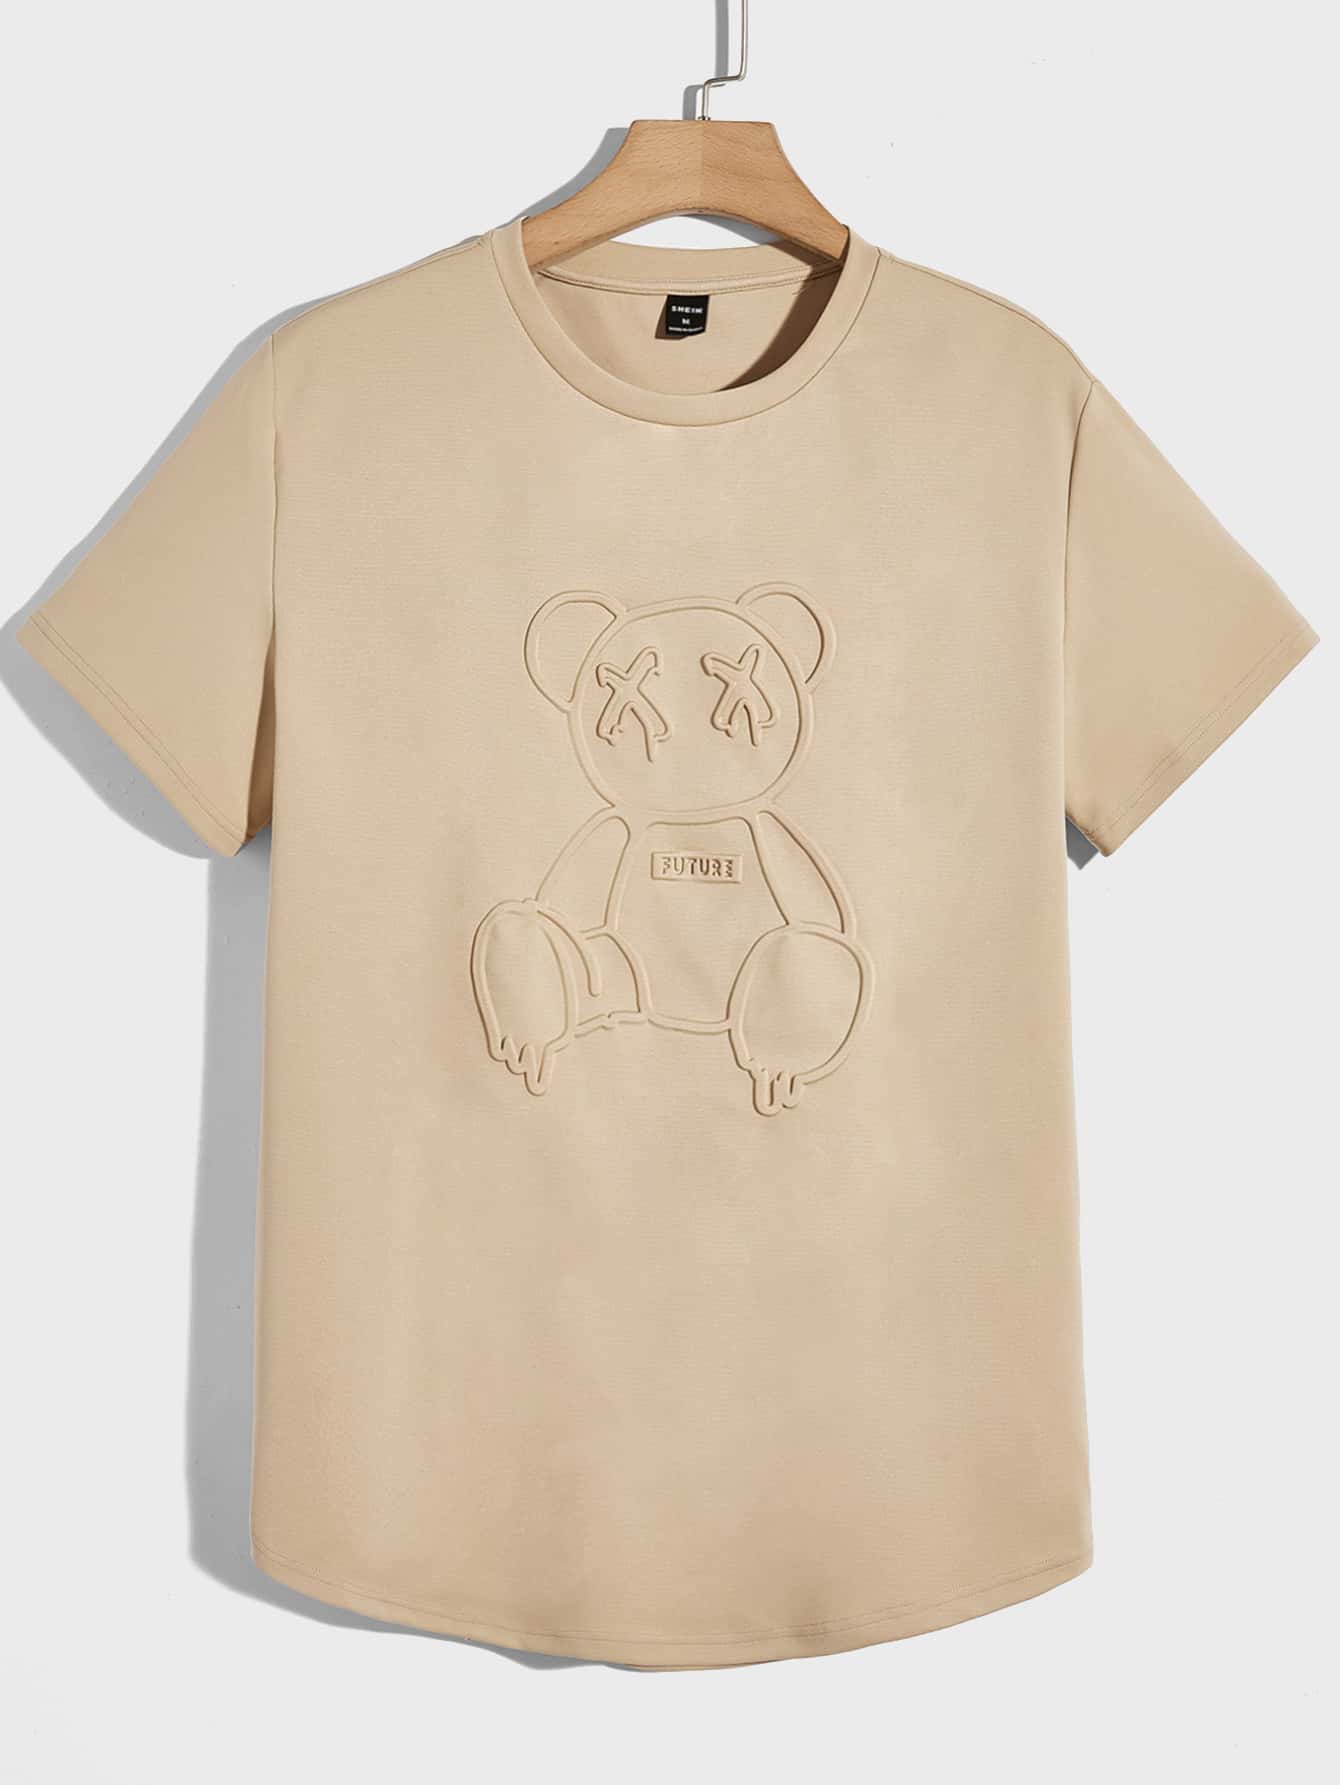 Мужская вязаная футболка Manfinity Hypemode с короткими рукавами и прессованным мишкой, хаки